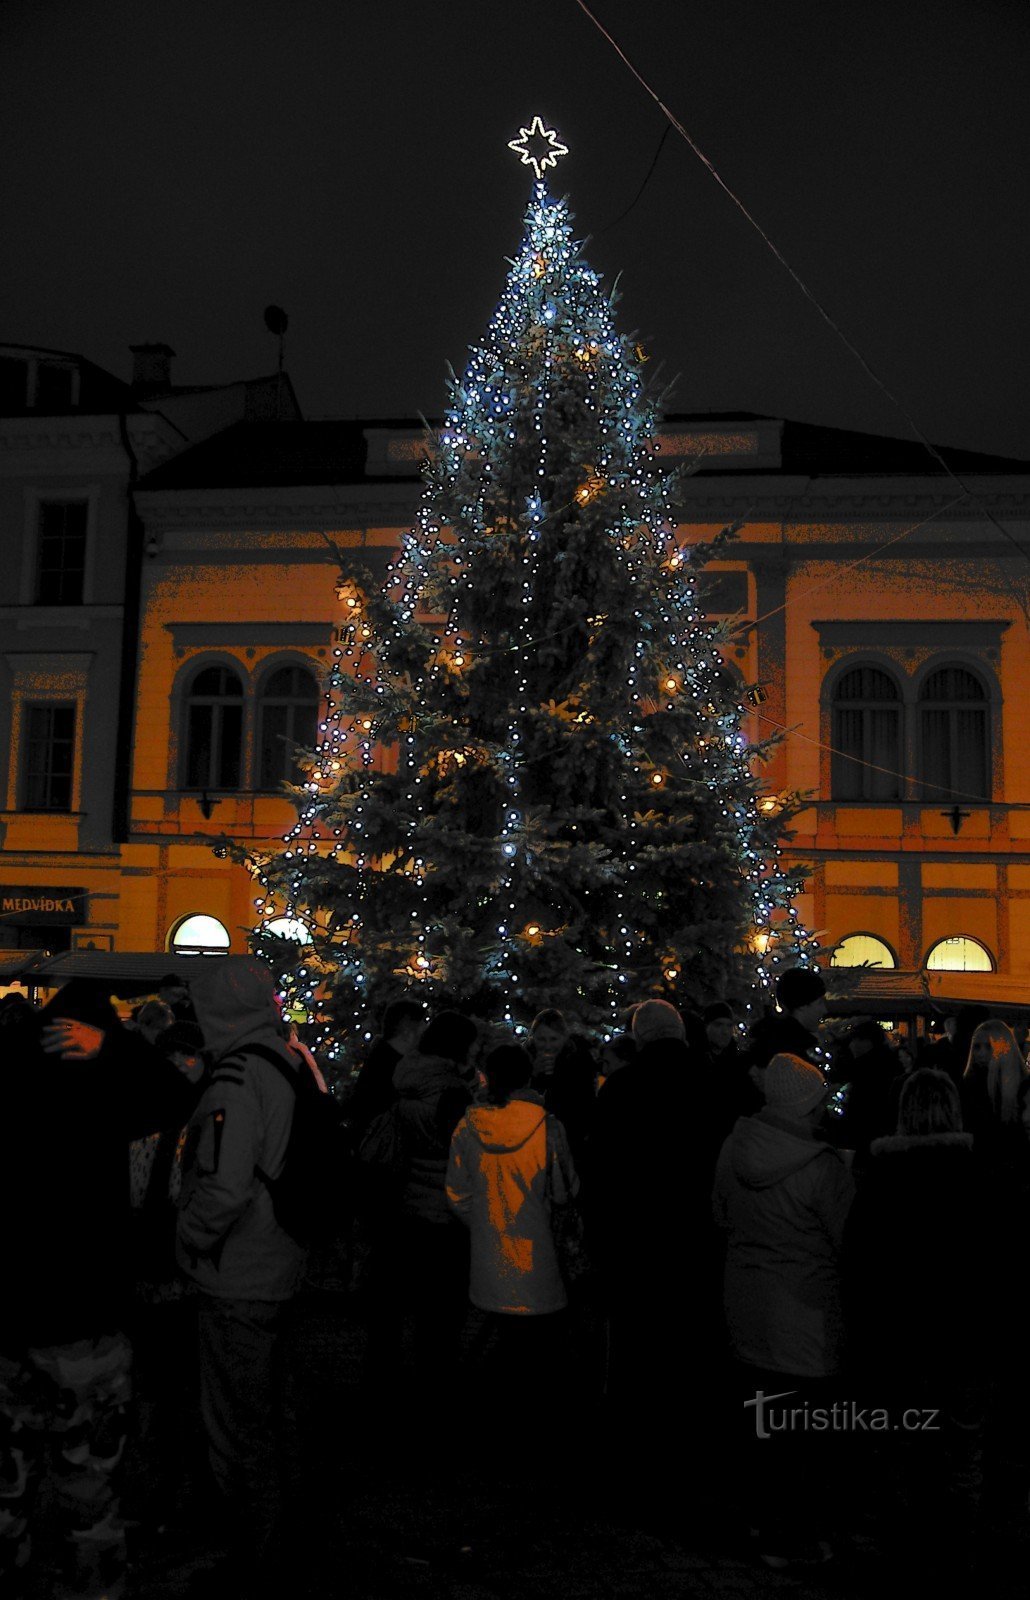 Jul "At Točák" eller Šumper adventsmarkeder